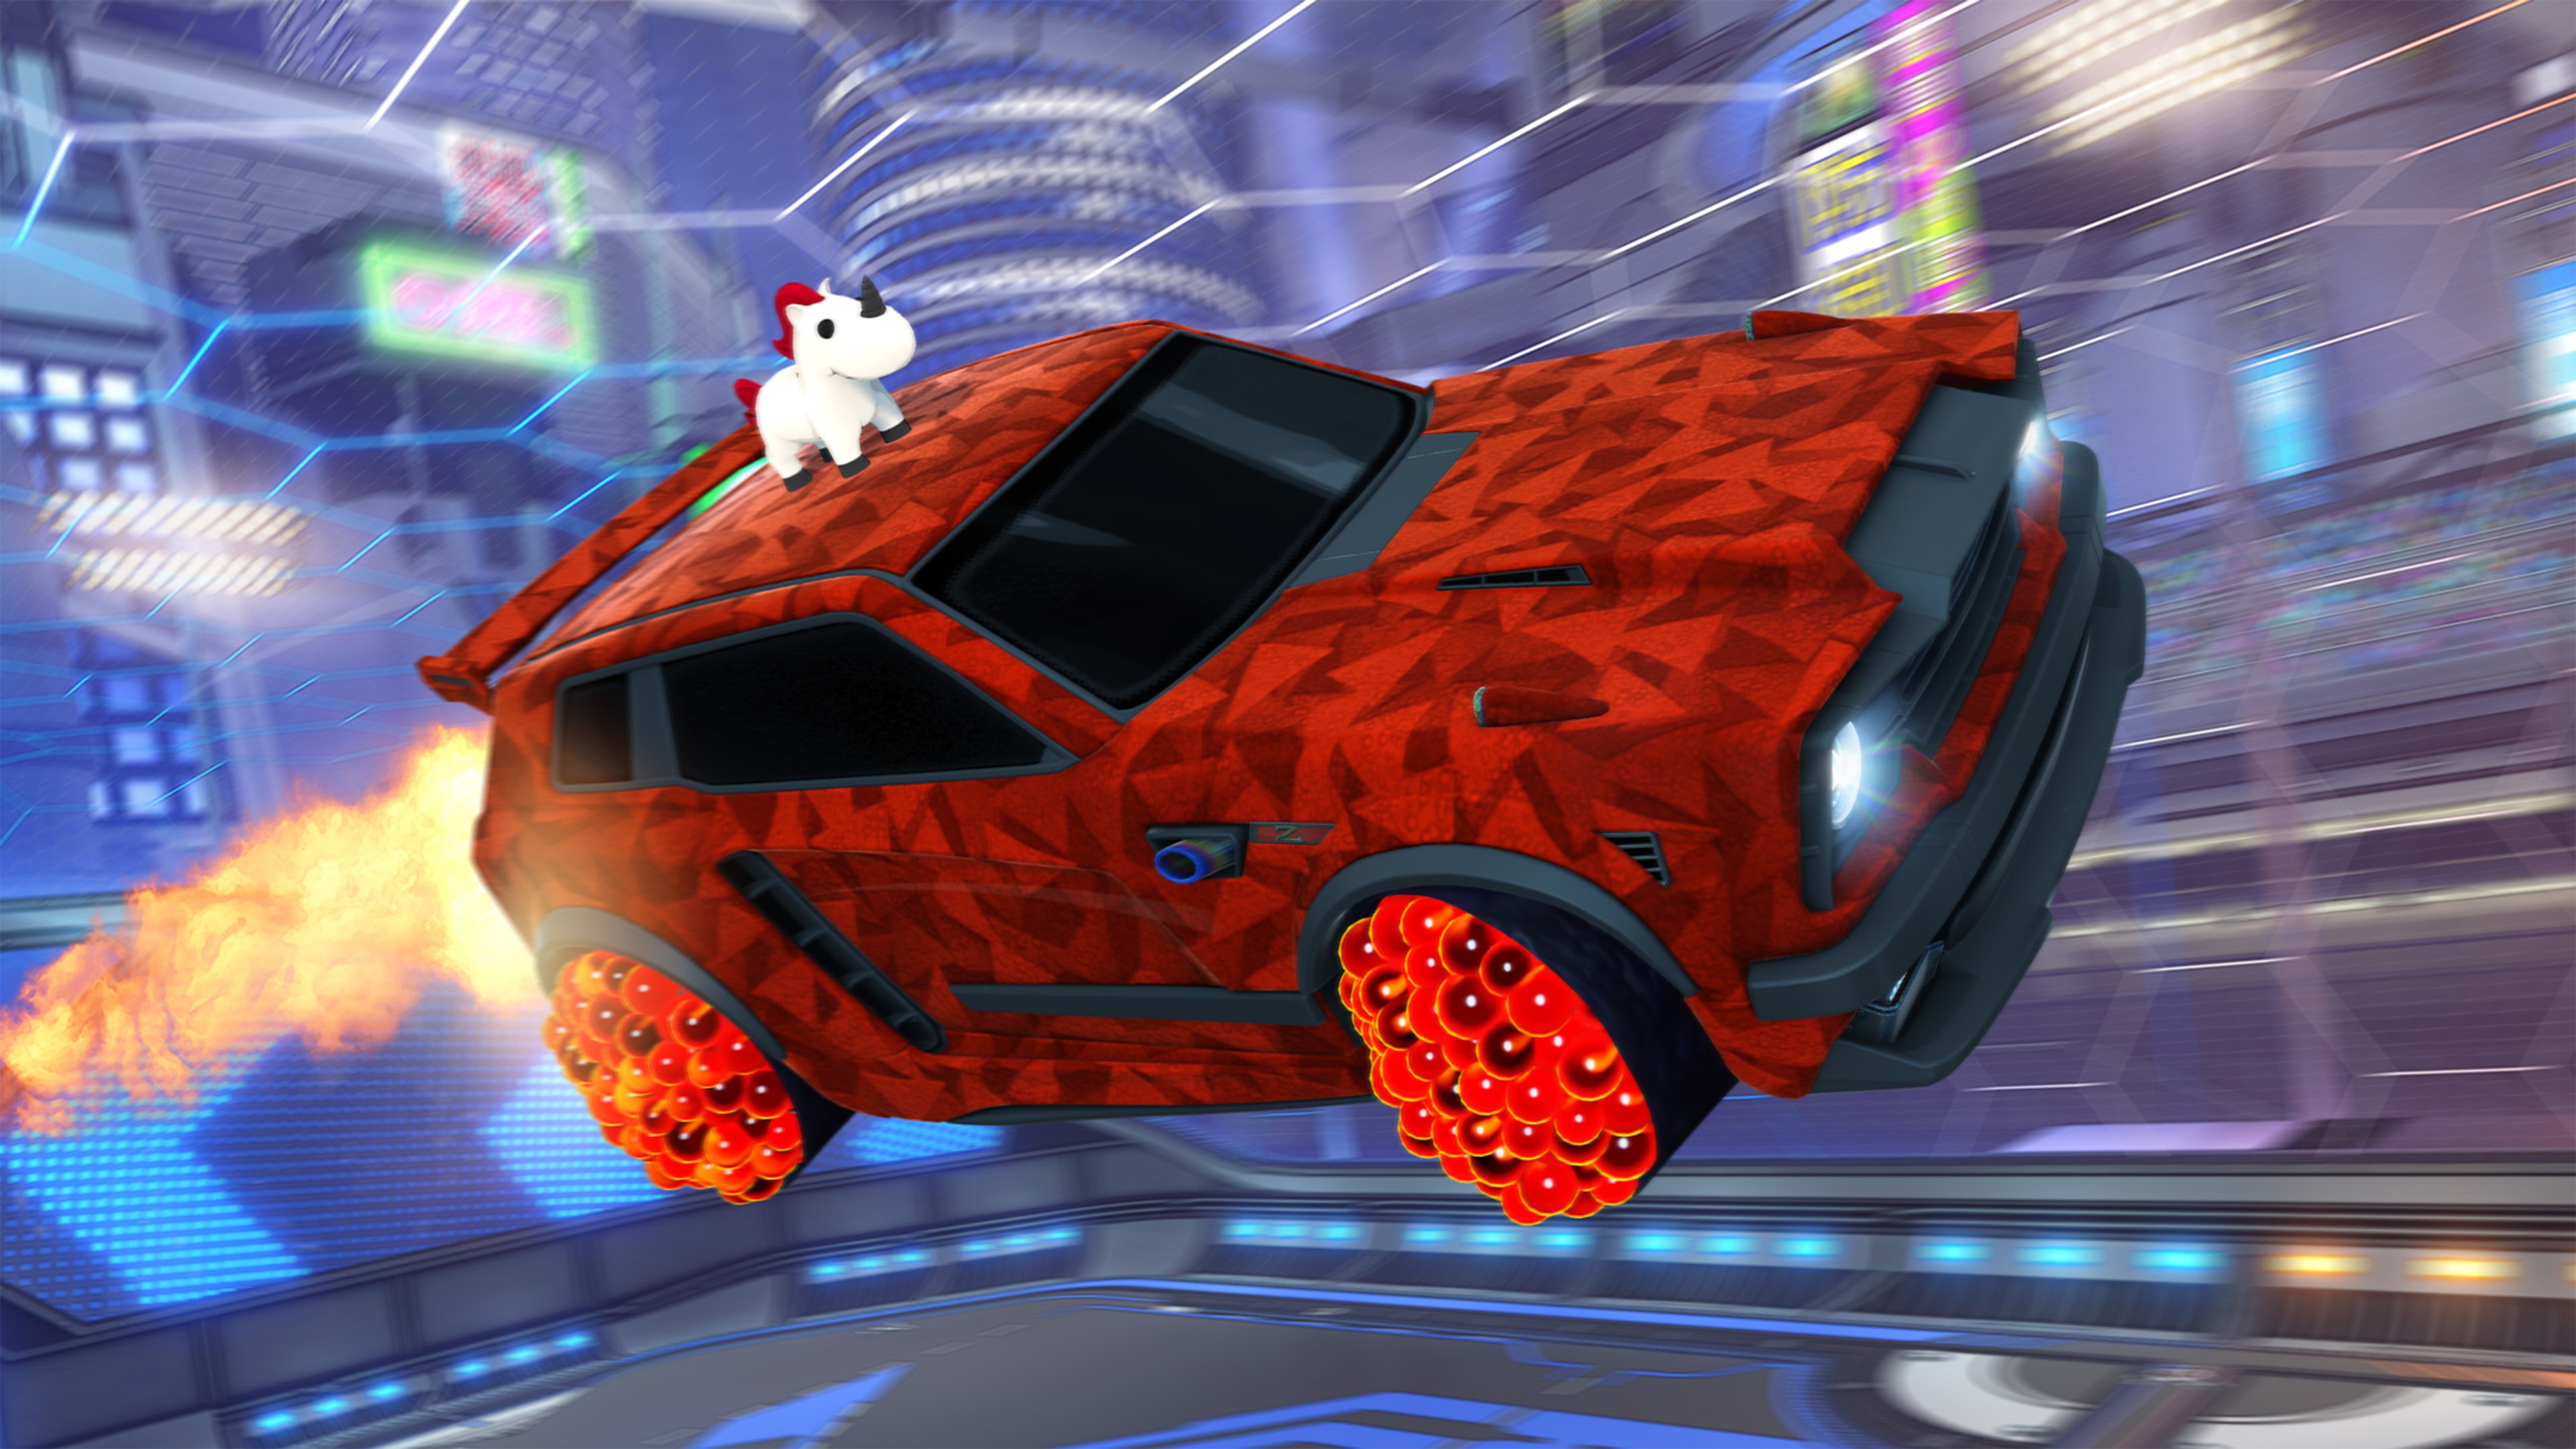 Capture d'écran de Rocket League montrant une voiture rouge avec un animal ressemblant à une licorne sur son toit et une peinture à l'effet géométrique